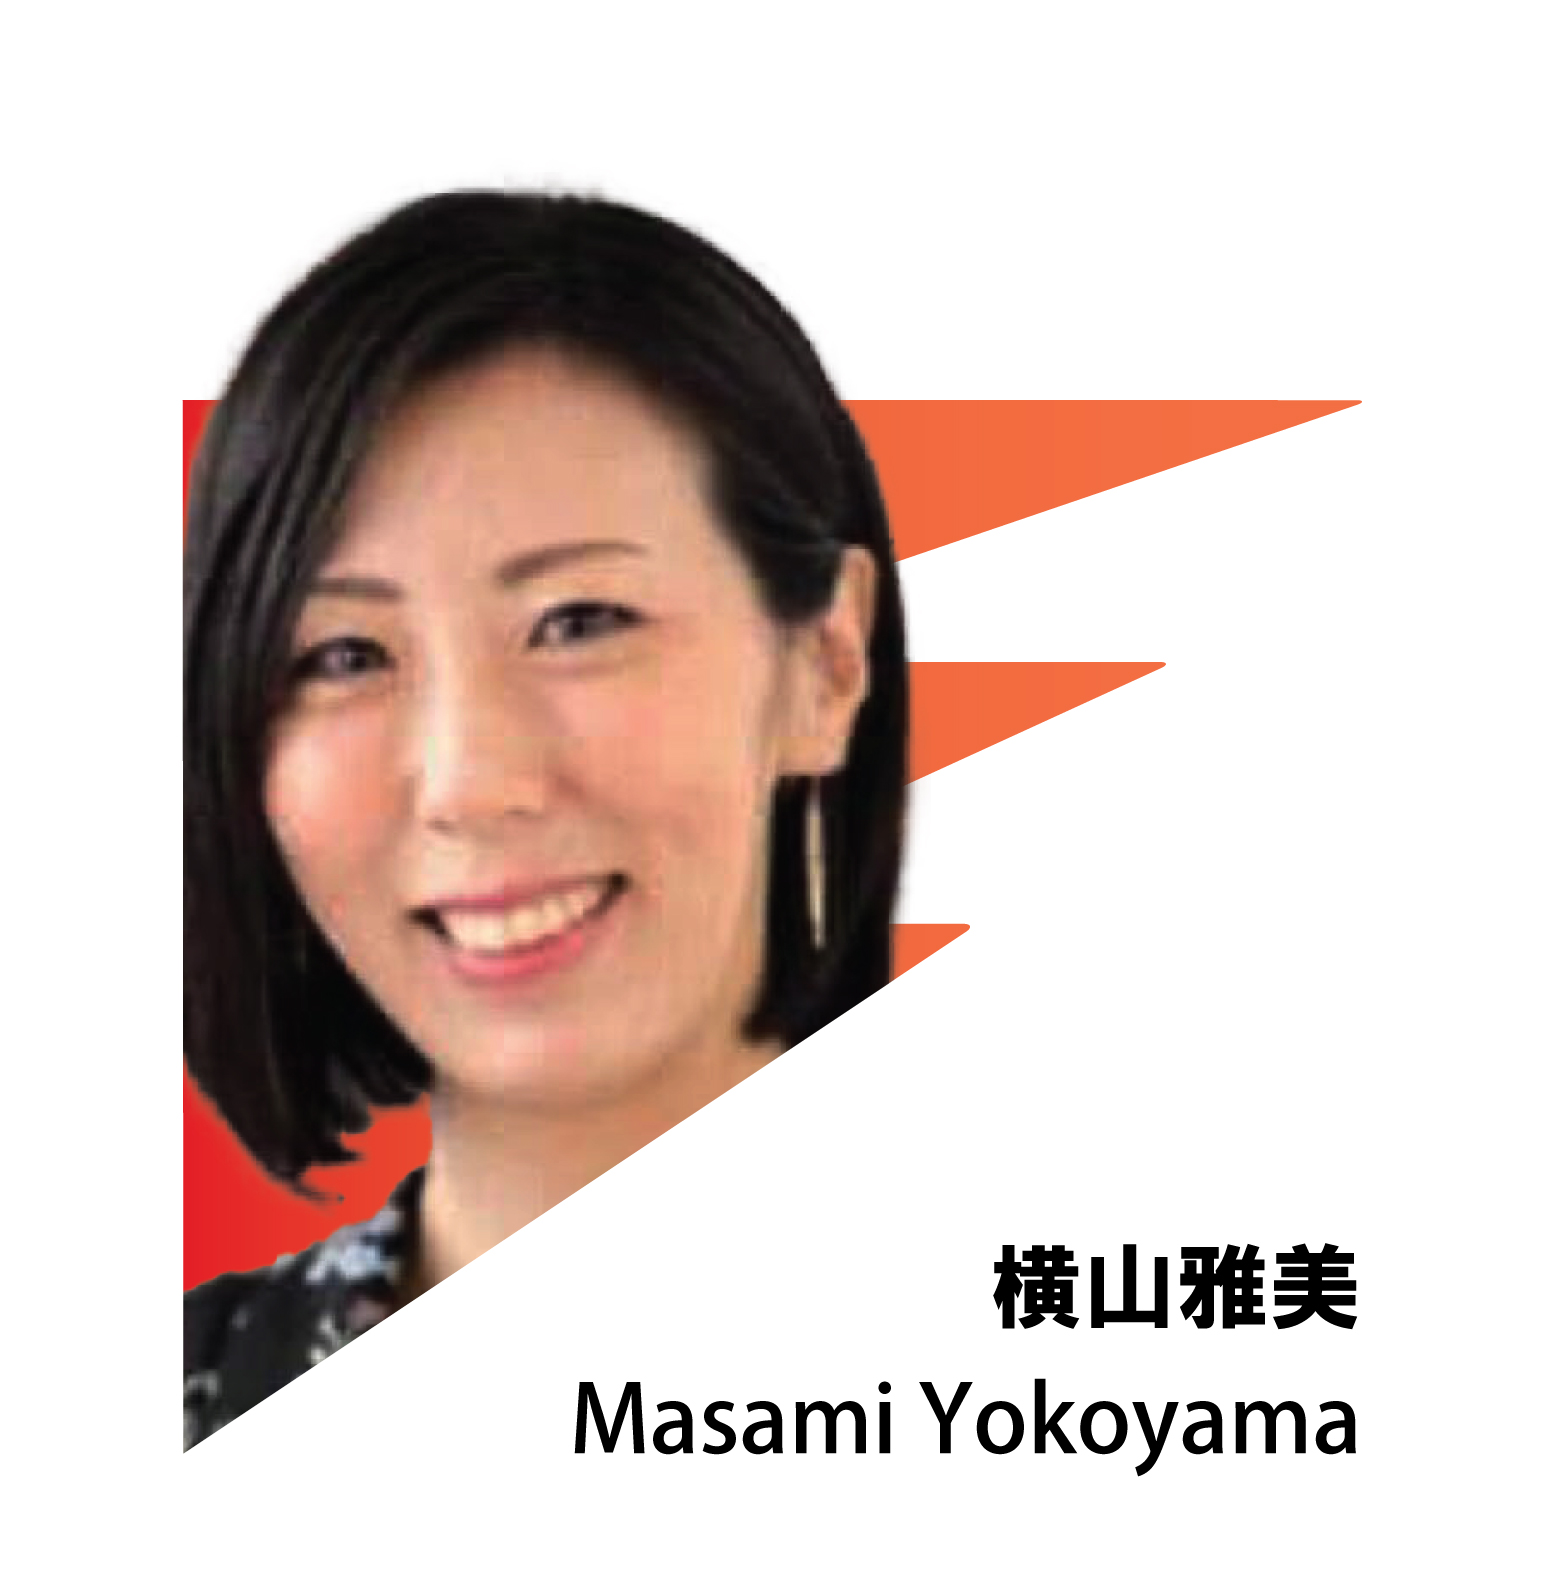 MASAMI YOKOYAMA